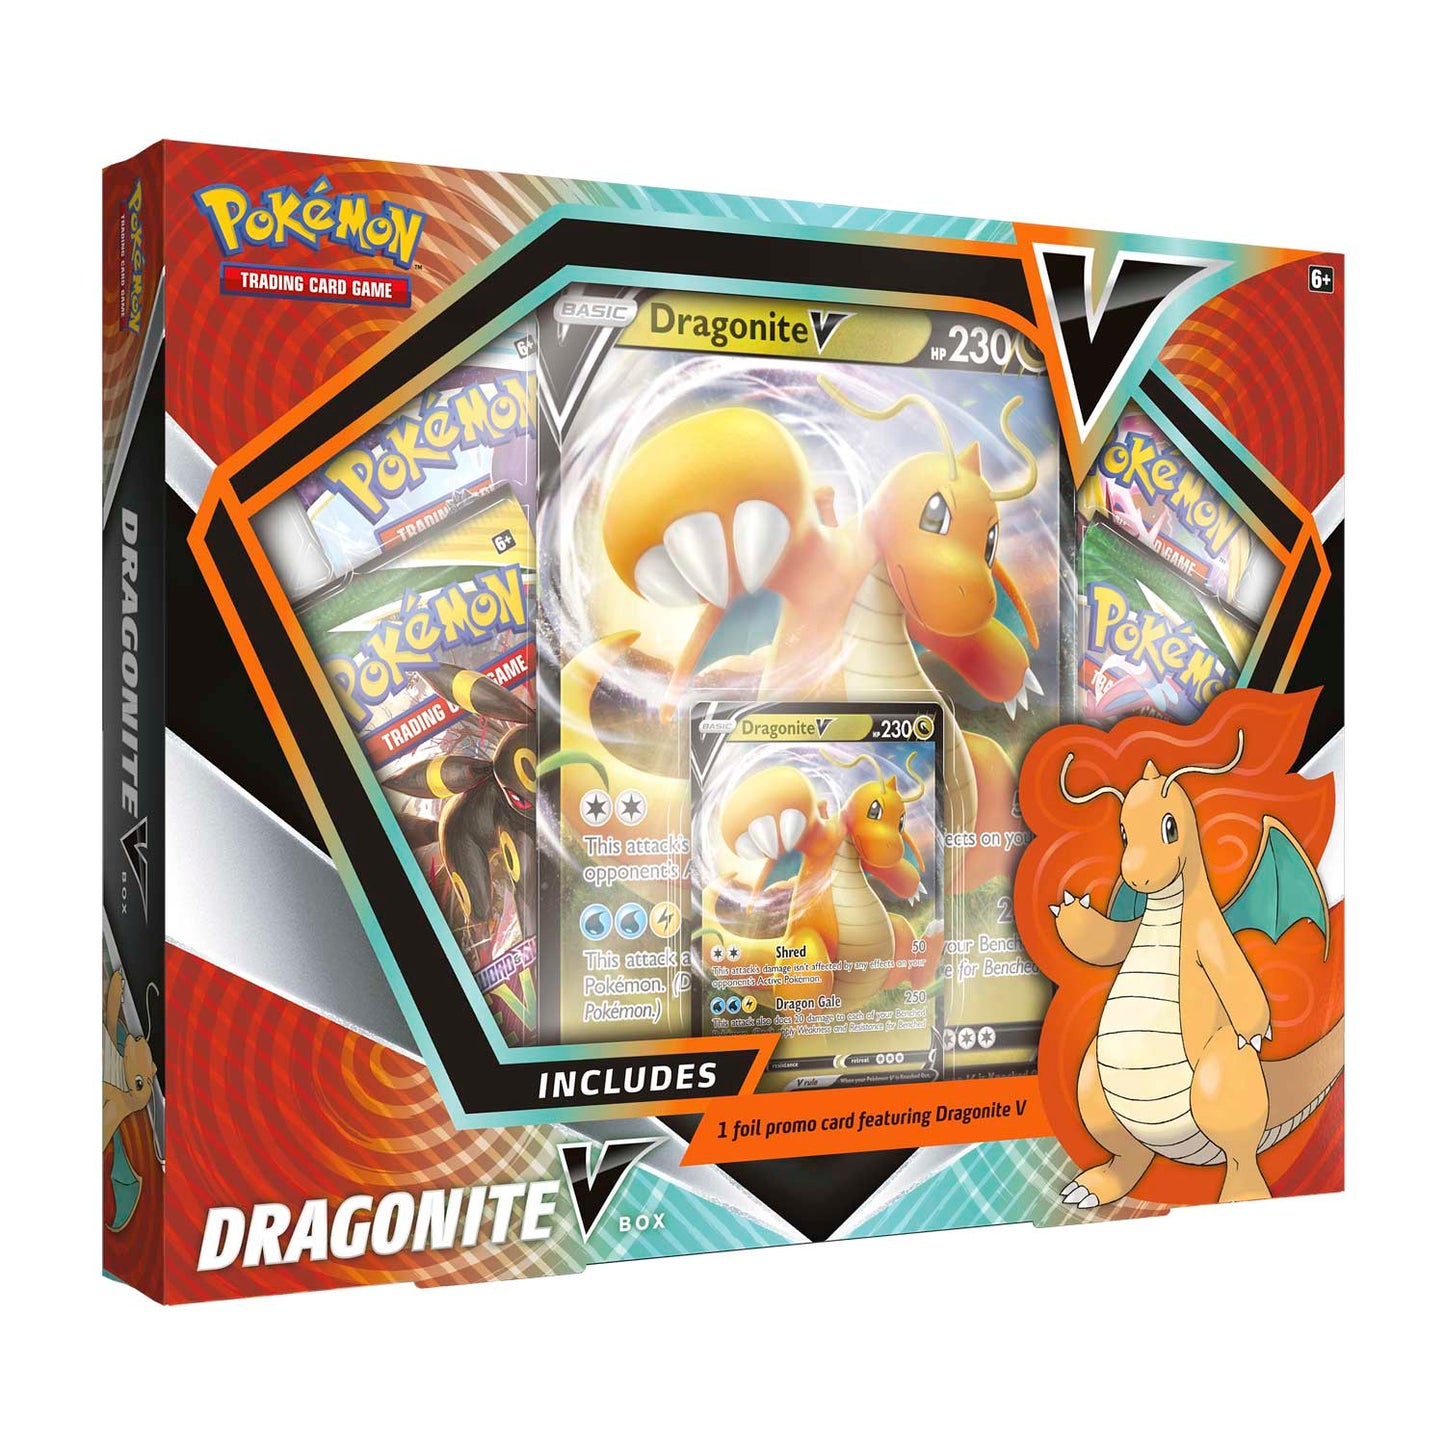 Pokemon TCG: Dragonite V Box Case Super Anime Store 